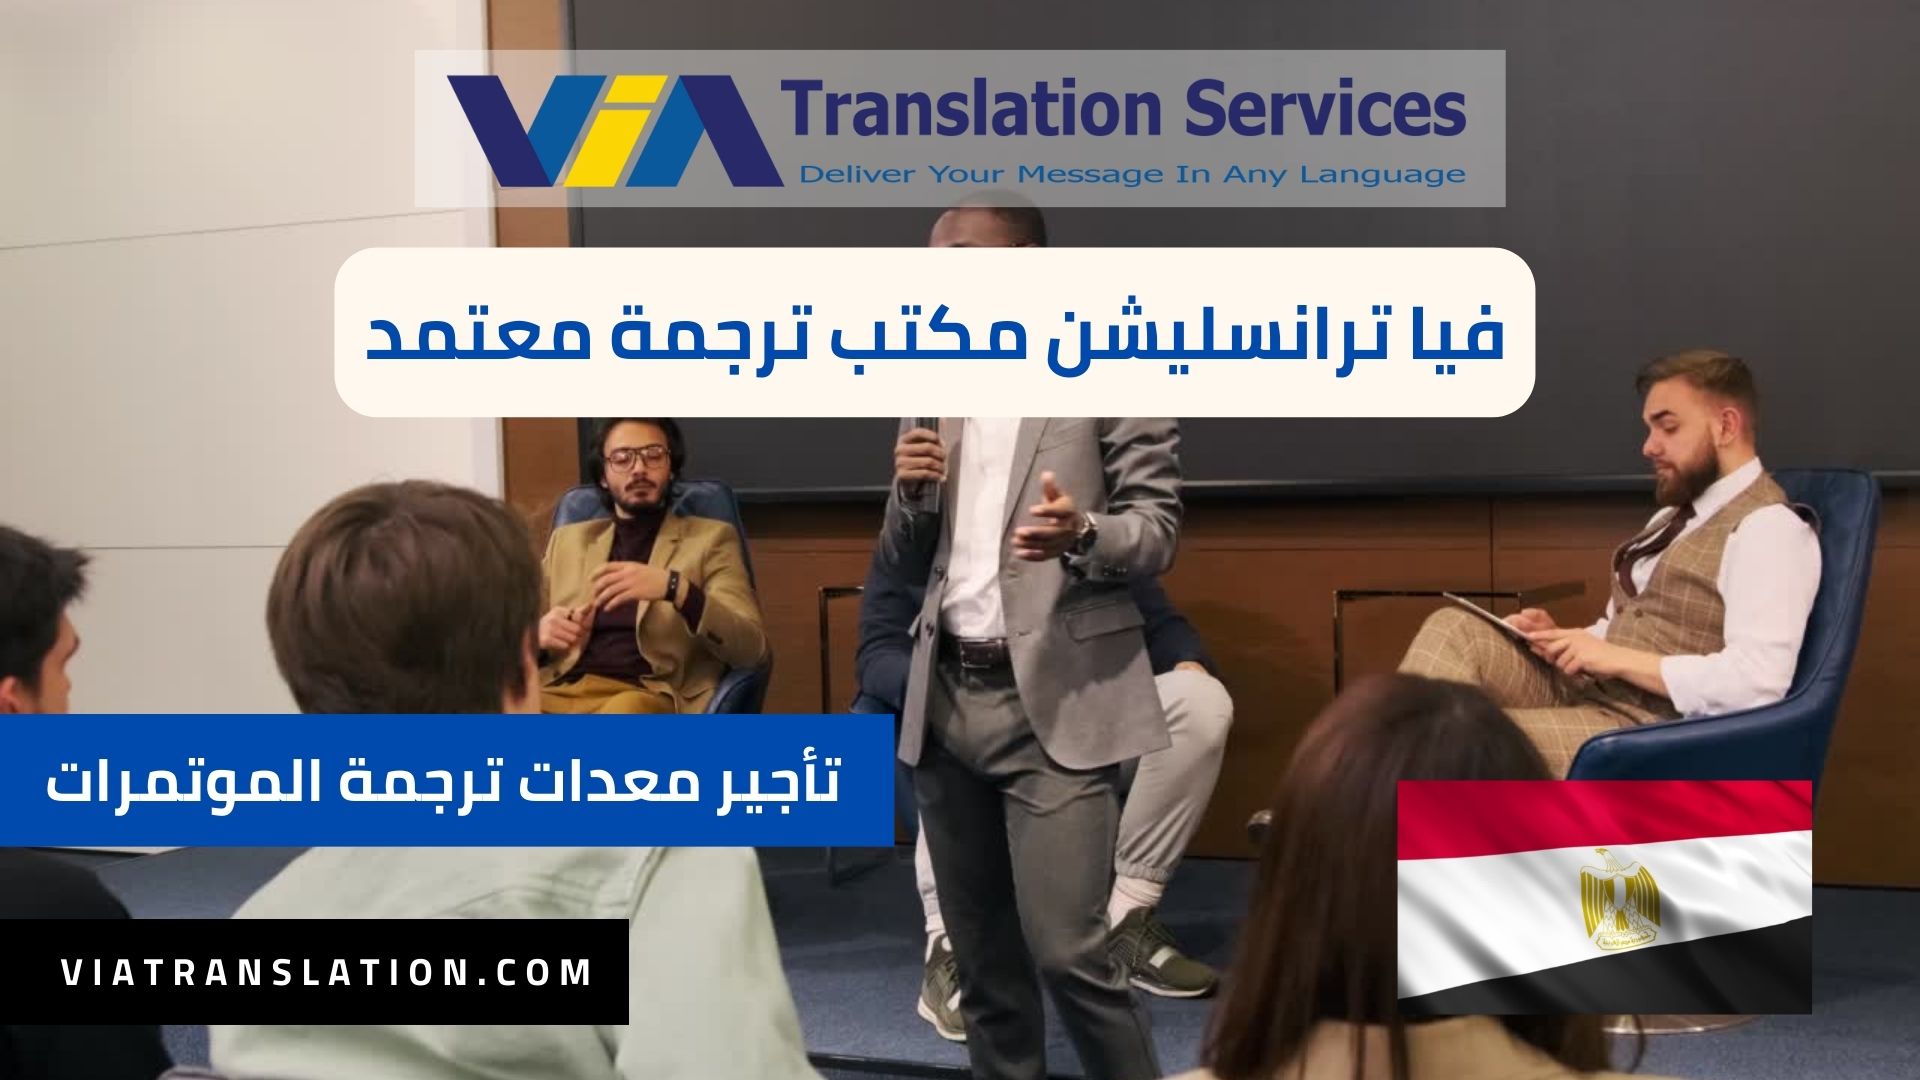 أفضل خدمات تأجير معدات الترجمة في المؤتمرات الدولية في مصر 2023 